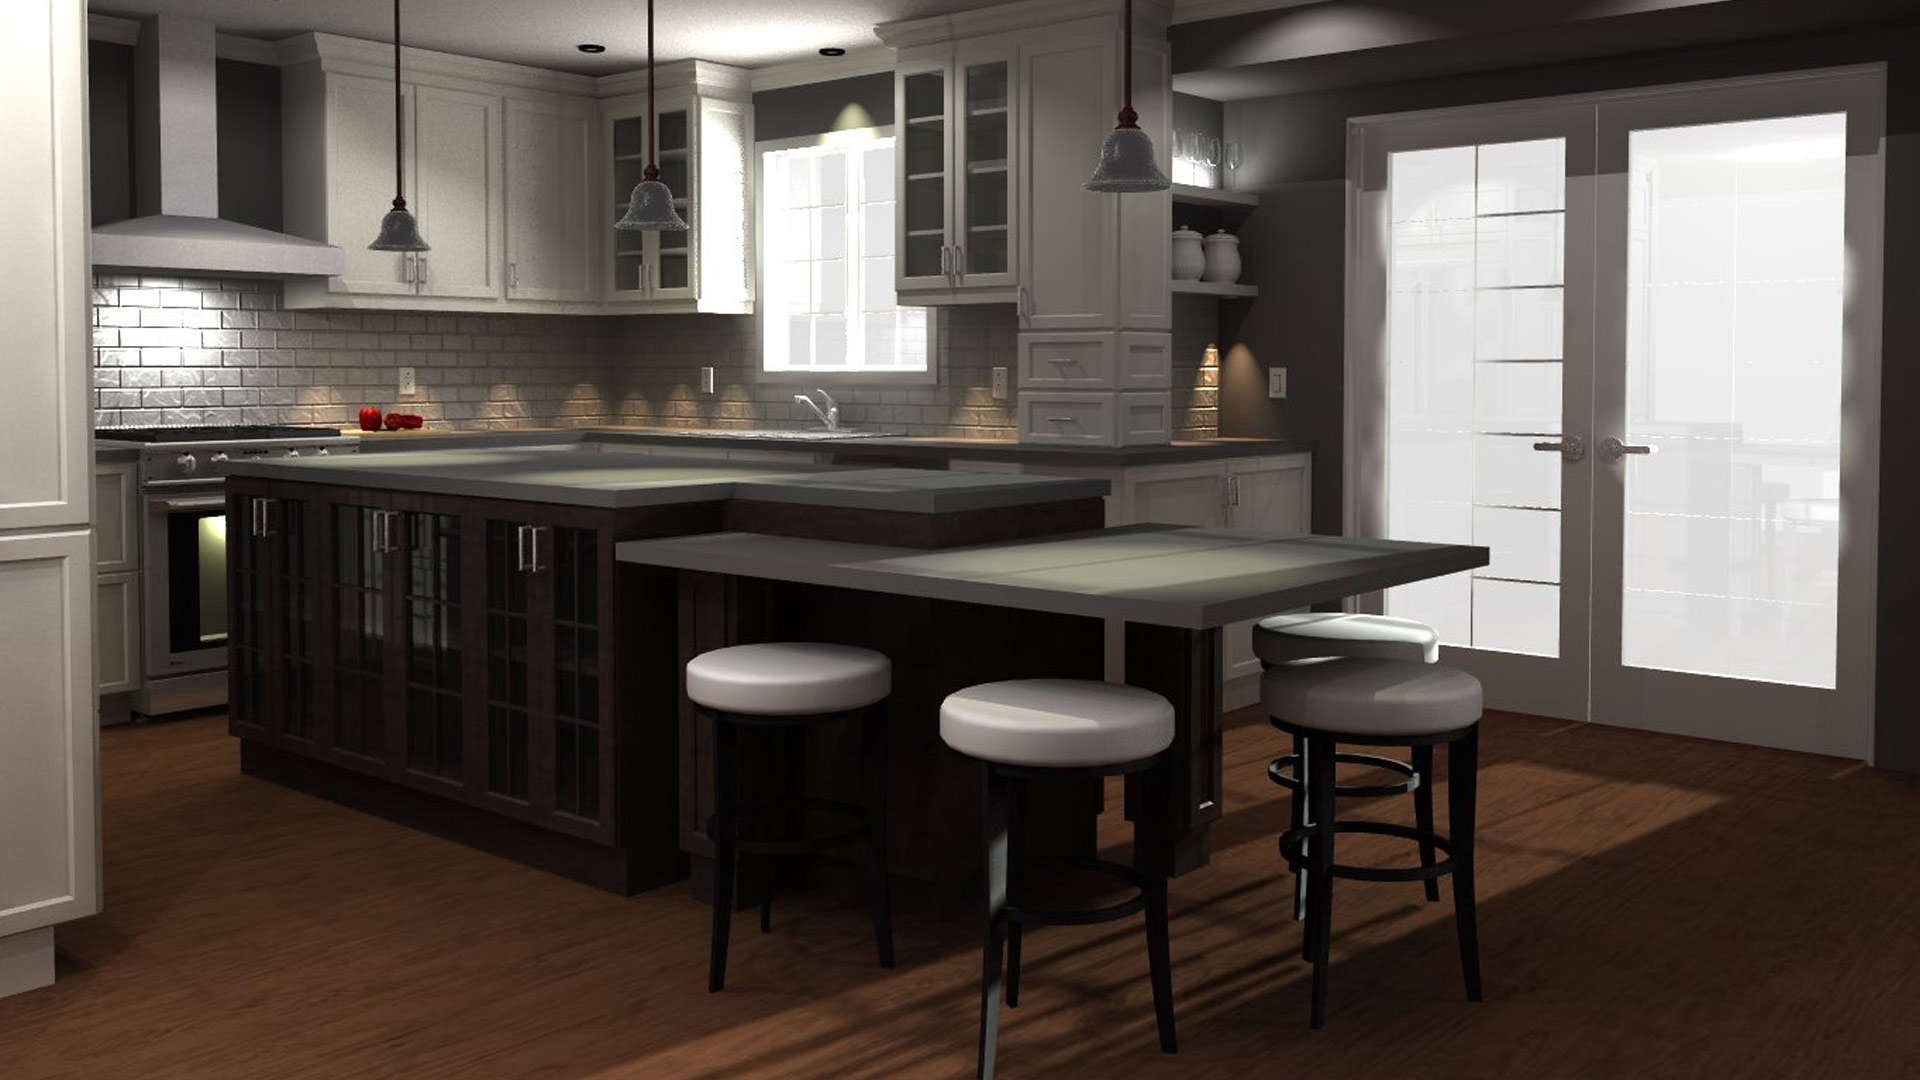 20 20 kitchen design online